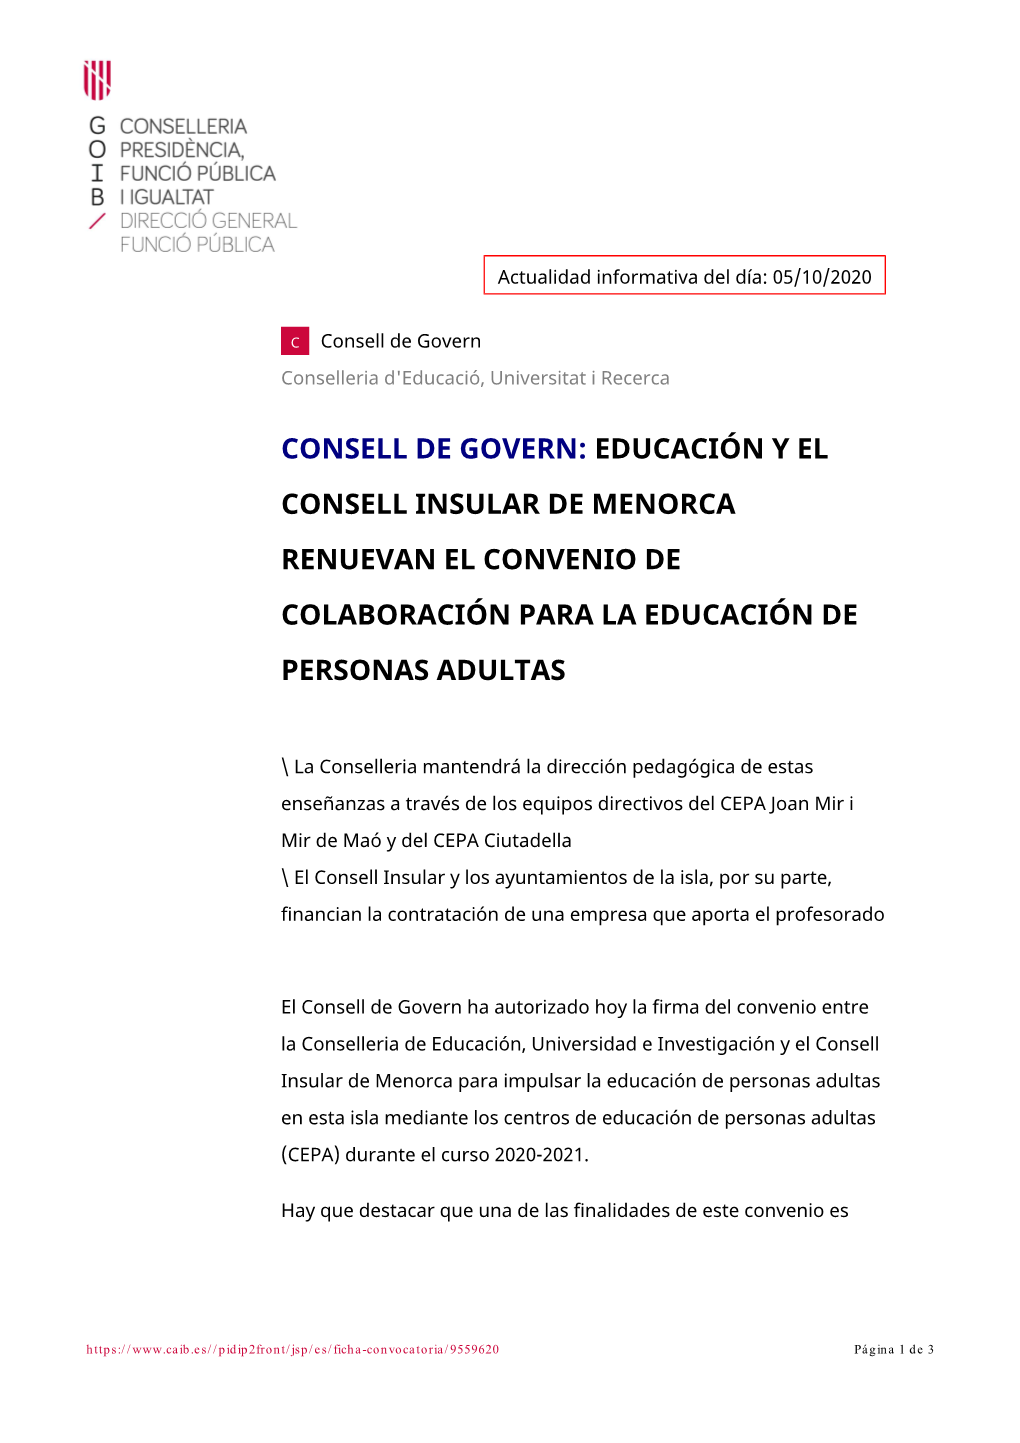 Educación Y El Consell Insular De Menorca Renuevan El Convenio De Colaboración Para La Educación De Personas Adultas